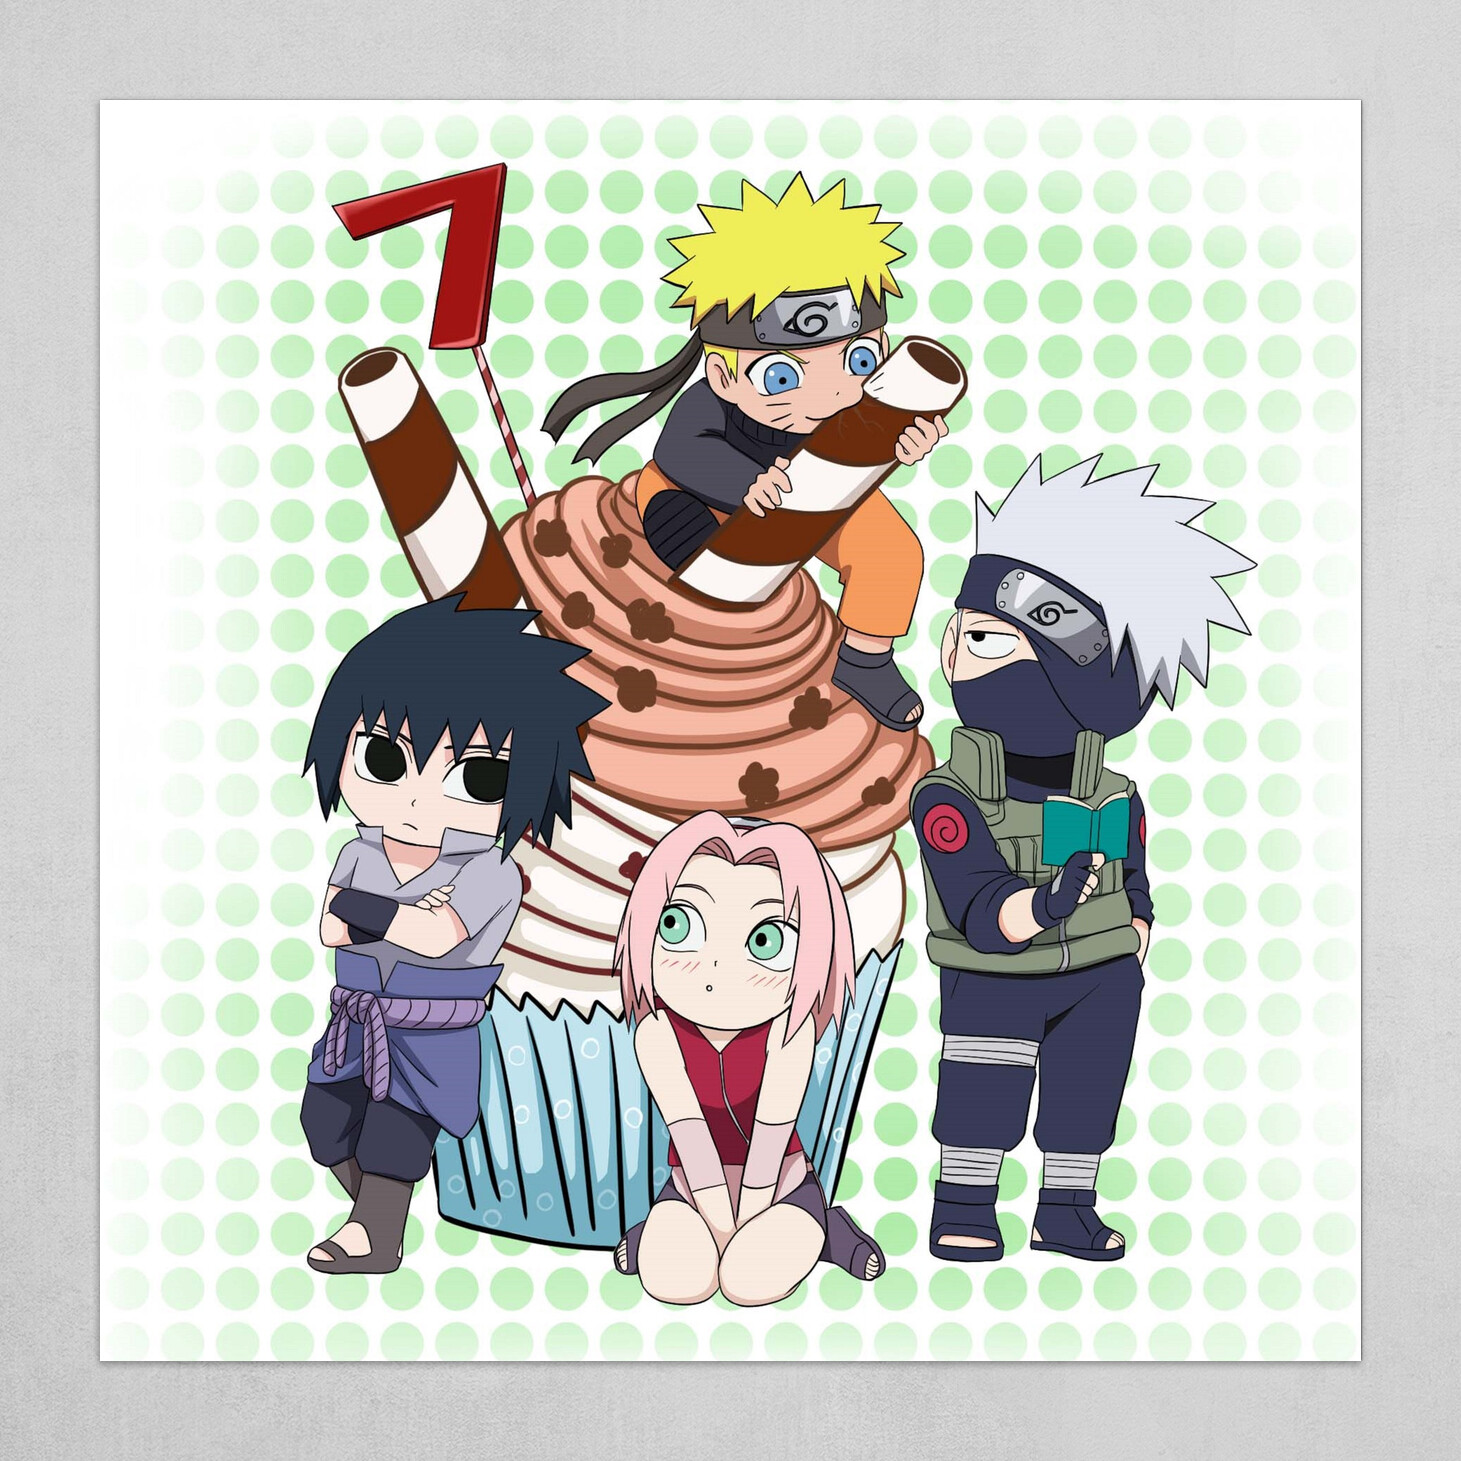 Team 7 (Kakashi), Narutopedia